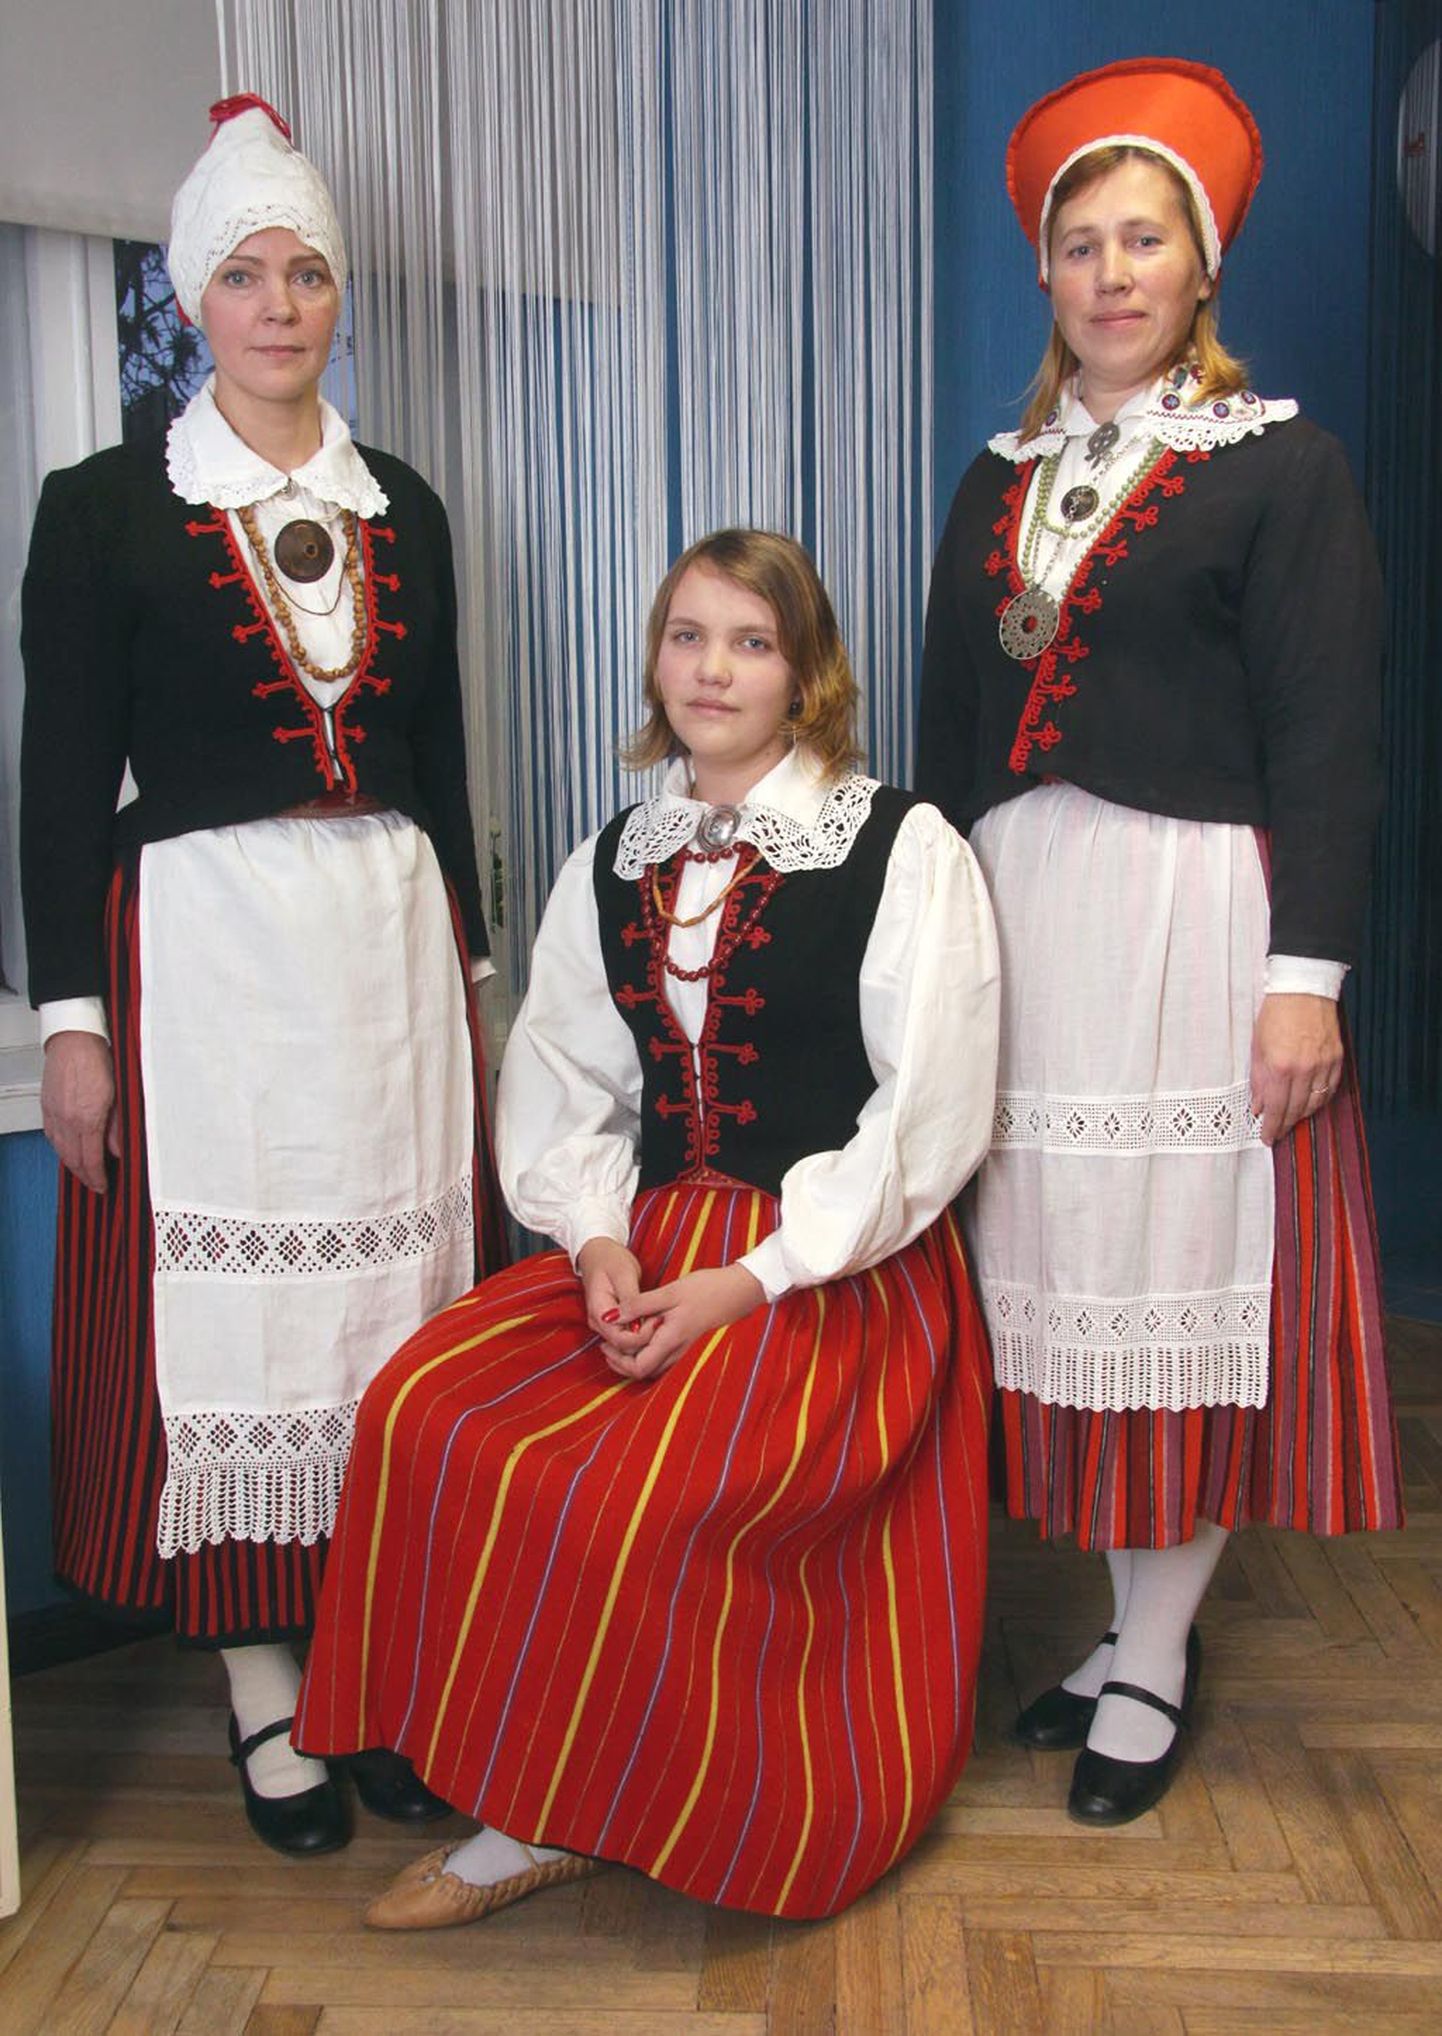 Raamatu Tori kihelkonna rahvarõivaist panevad kokku Tori põhikooli õpetaja Anne Rätsep (paremal) ja Olustveres õppiv Anneli Laur (vasakul). Istub Meeri Rätsep.